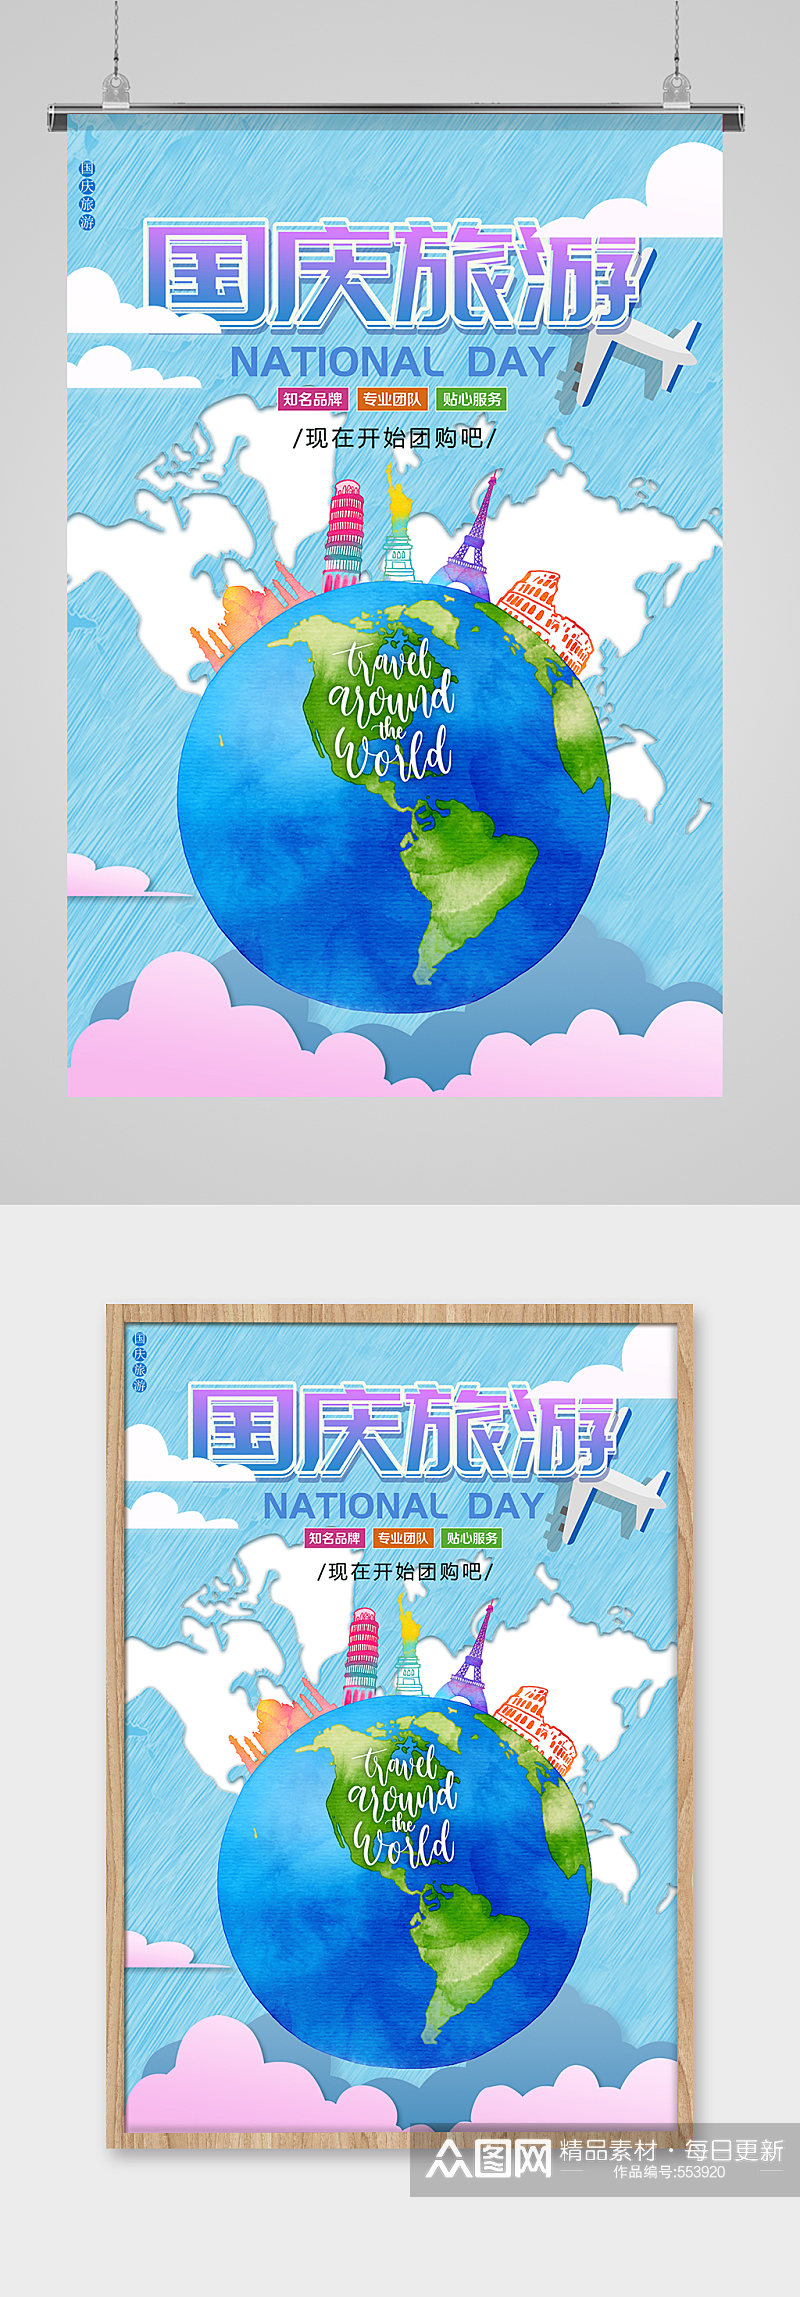 国庆节出游旅行海报设计素材